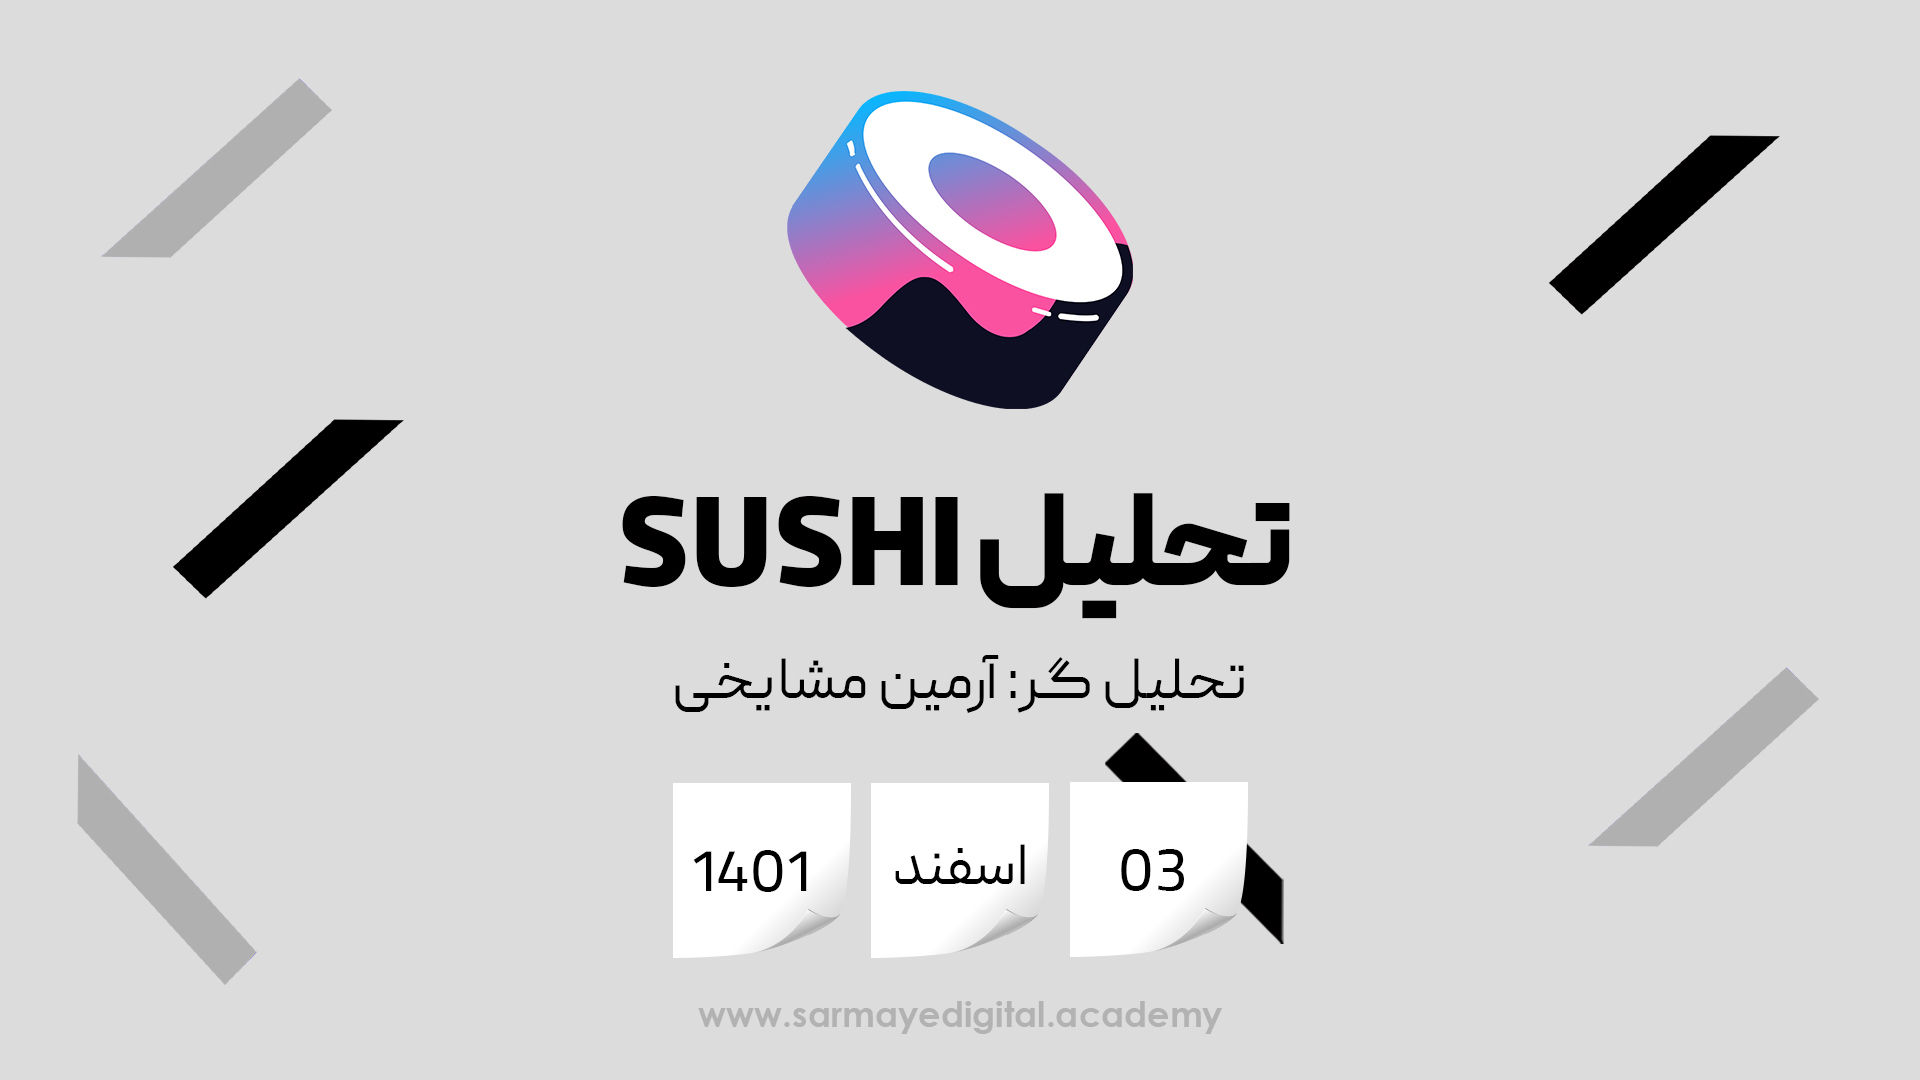 تحلیل ارز سوشی (SUSHI)